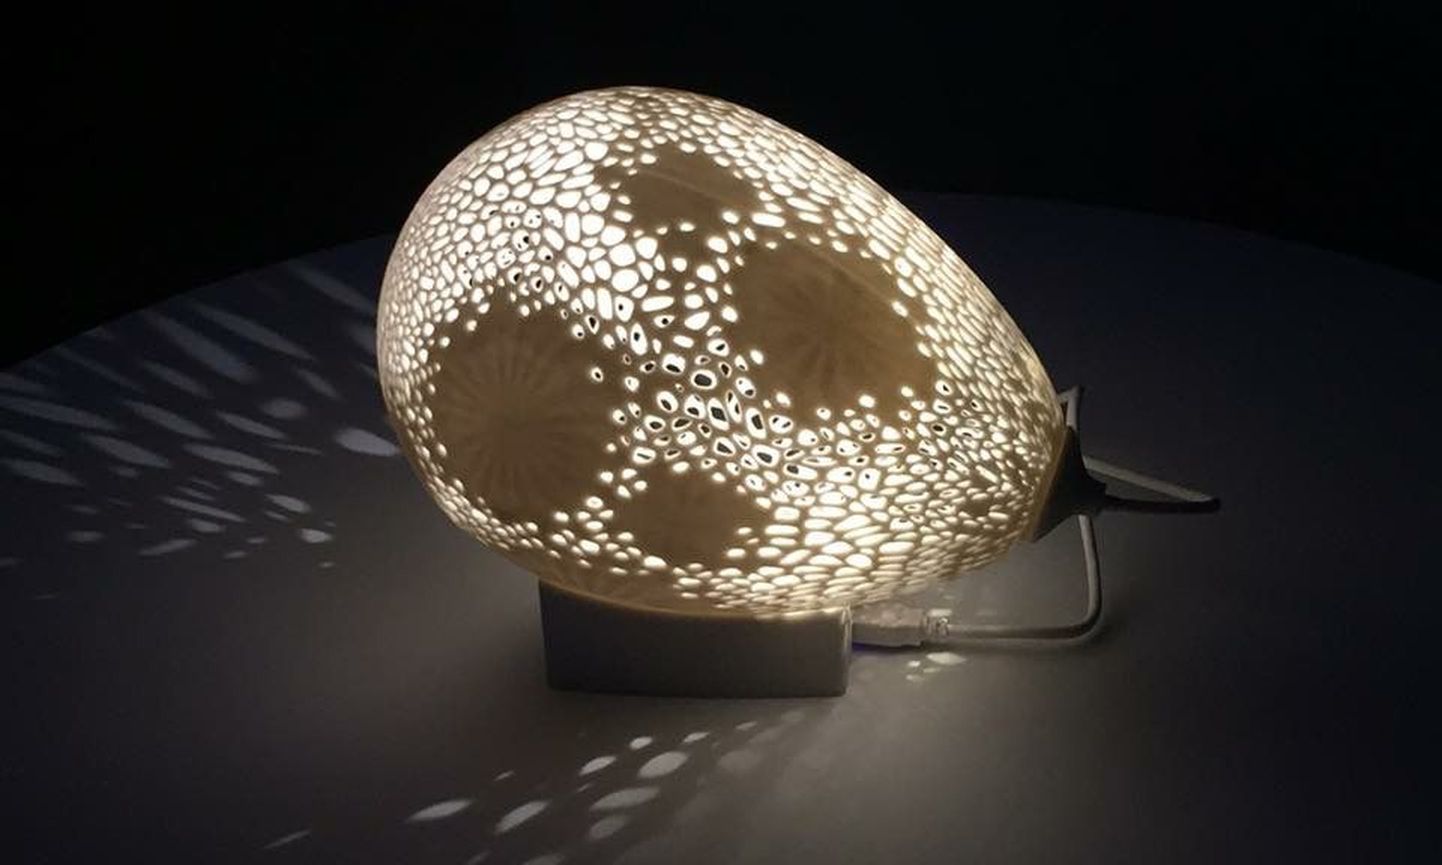 Aasta ettevõtte auhind, kunstnik  Kärt Ojavee 3D-prinditud õhupall, mille pälvis Kodumaja As.